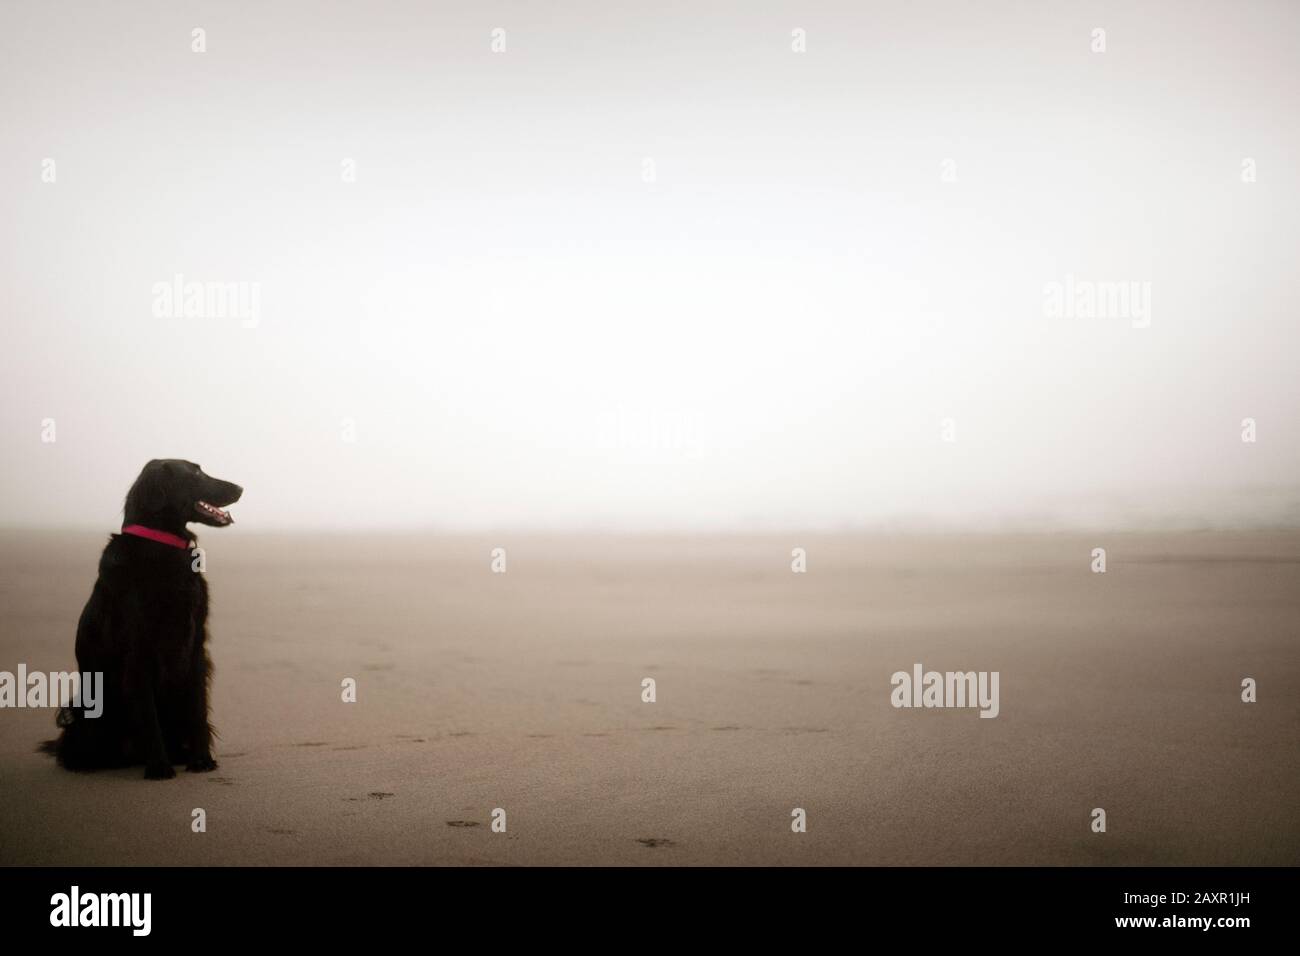 Cane in attesa su spiaggia vuota e nebbiosa. Foto Stock